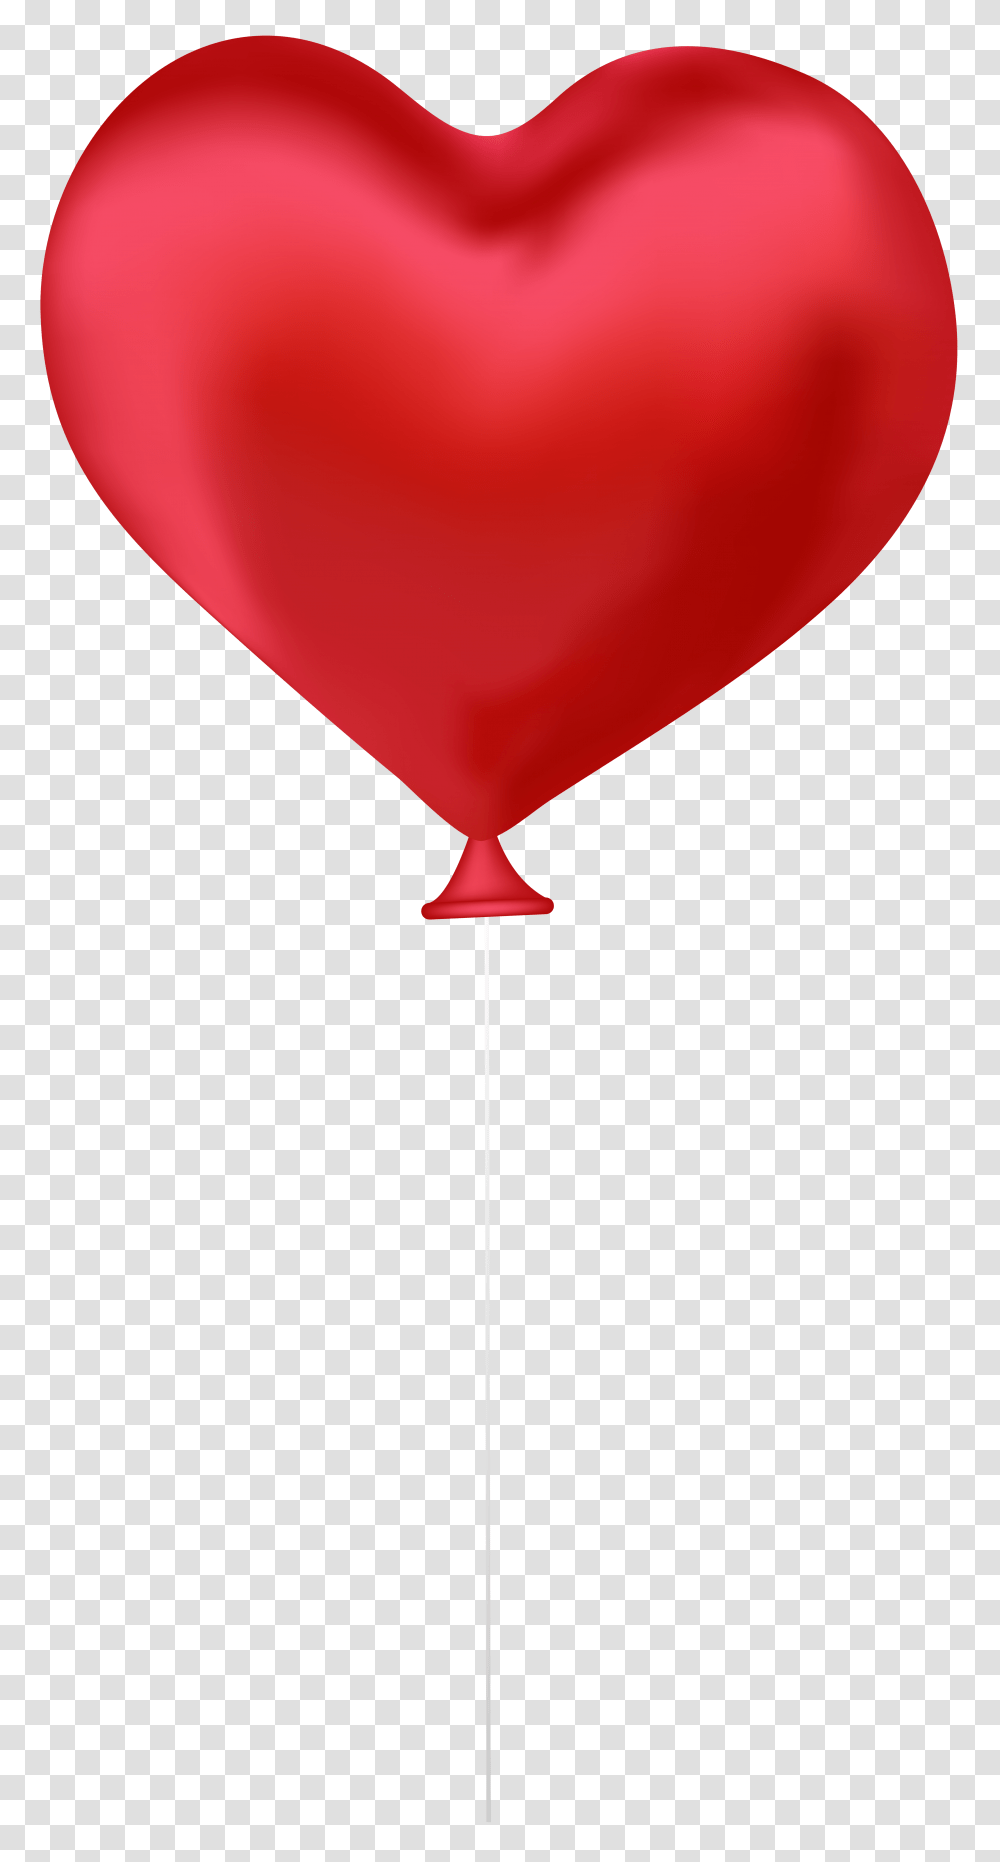 Red Heart Balloon Clip Art, Key, Cross Transparent Png